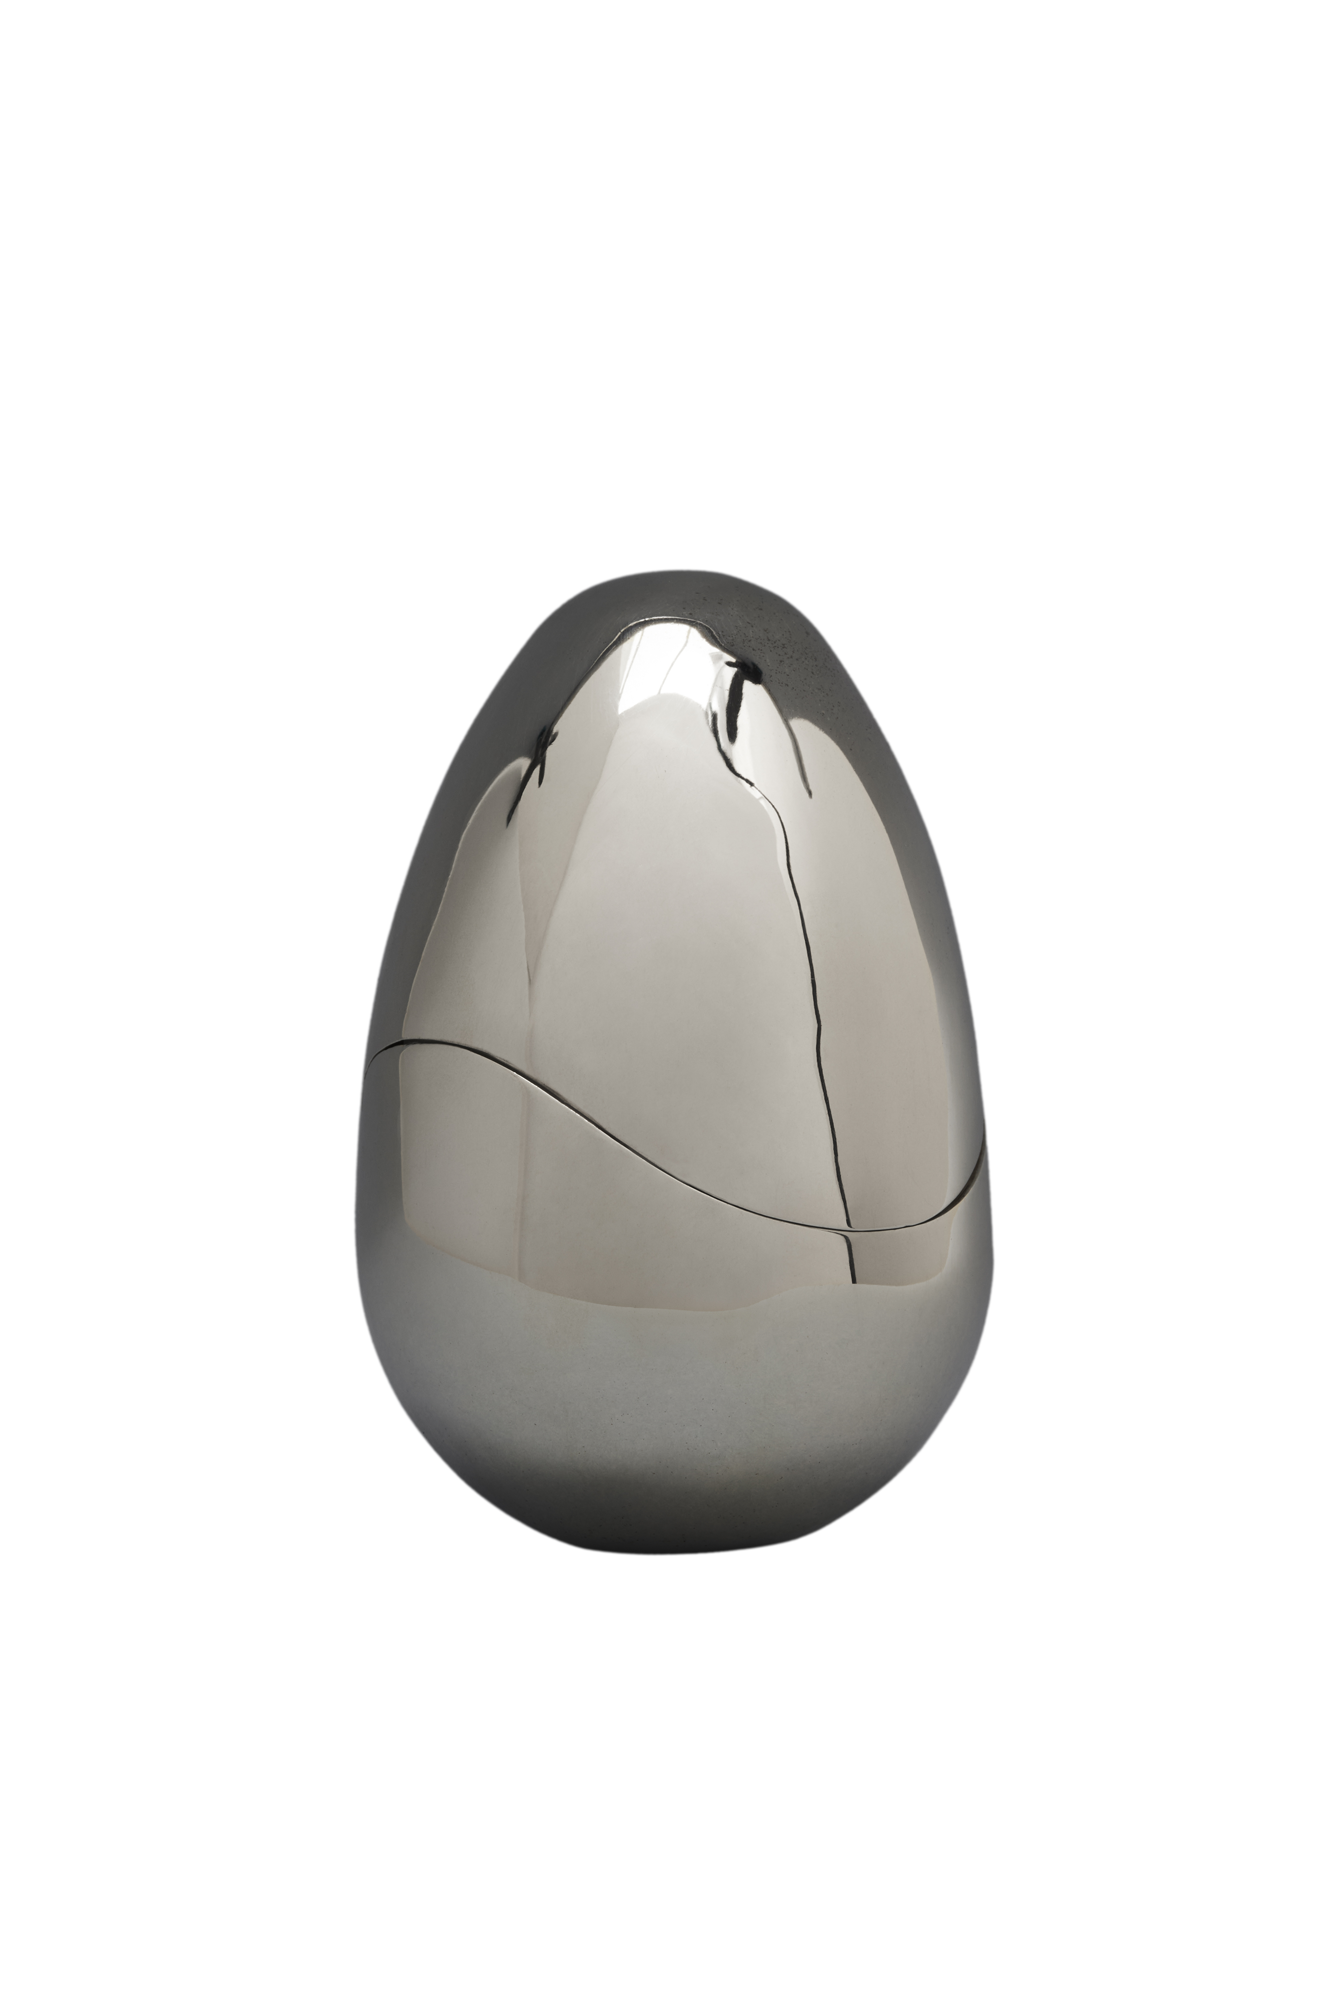 the egg caixa de prata